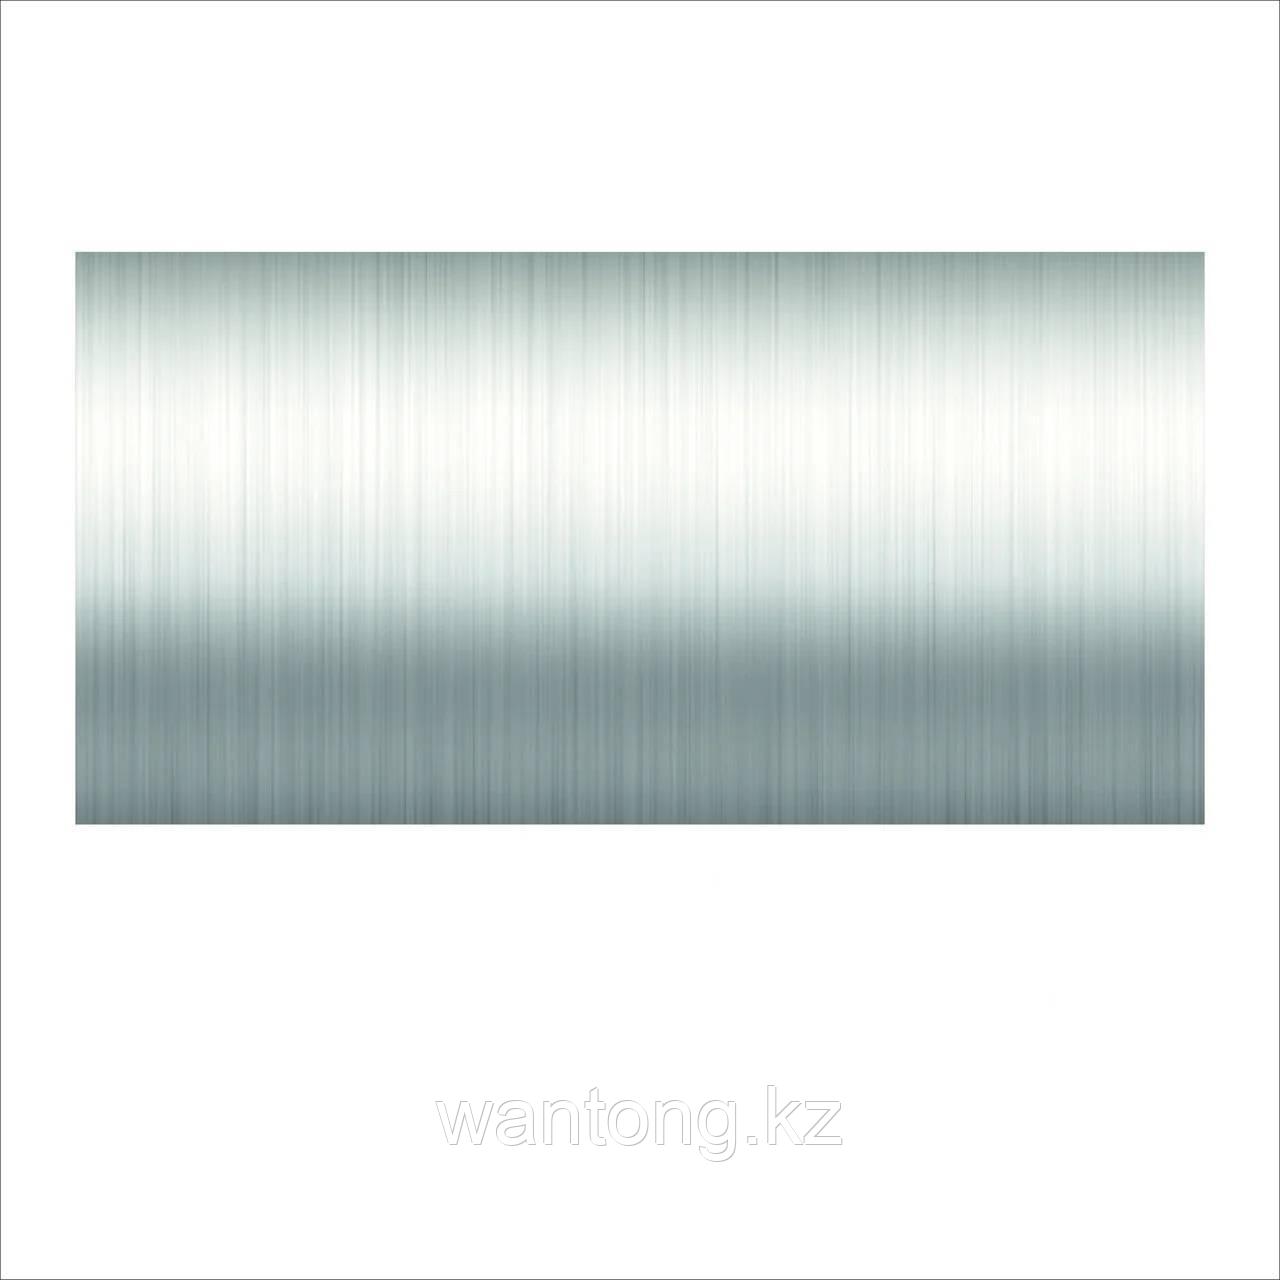 Цветные пленки Color Cropland- серебро(B)